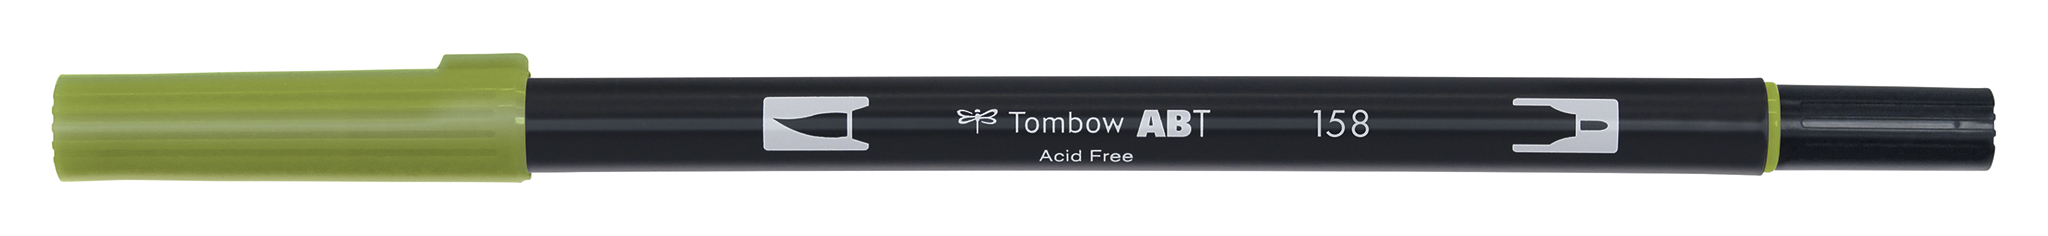 Tombow Art Brush Pen, dark olive